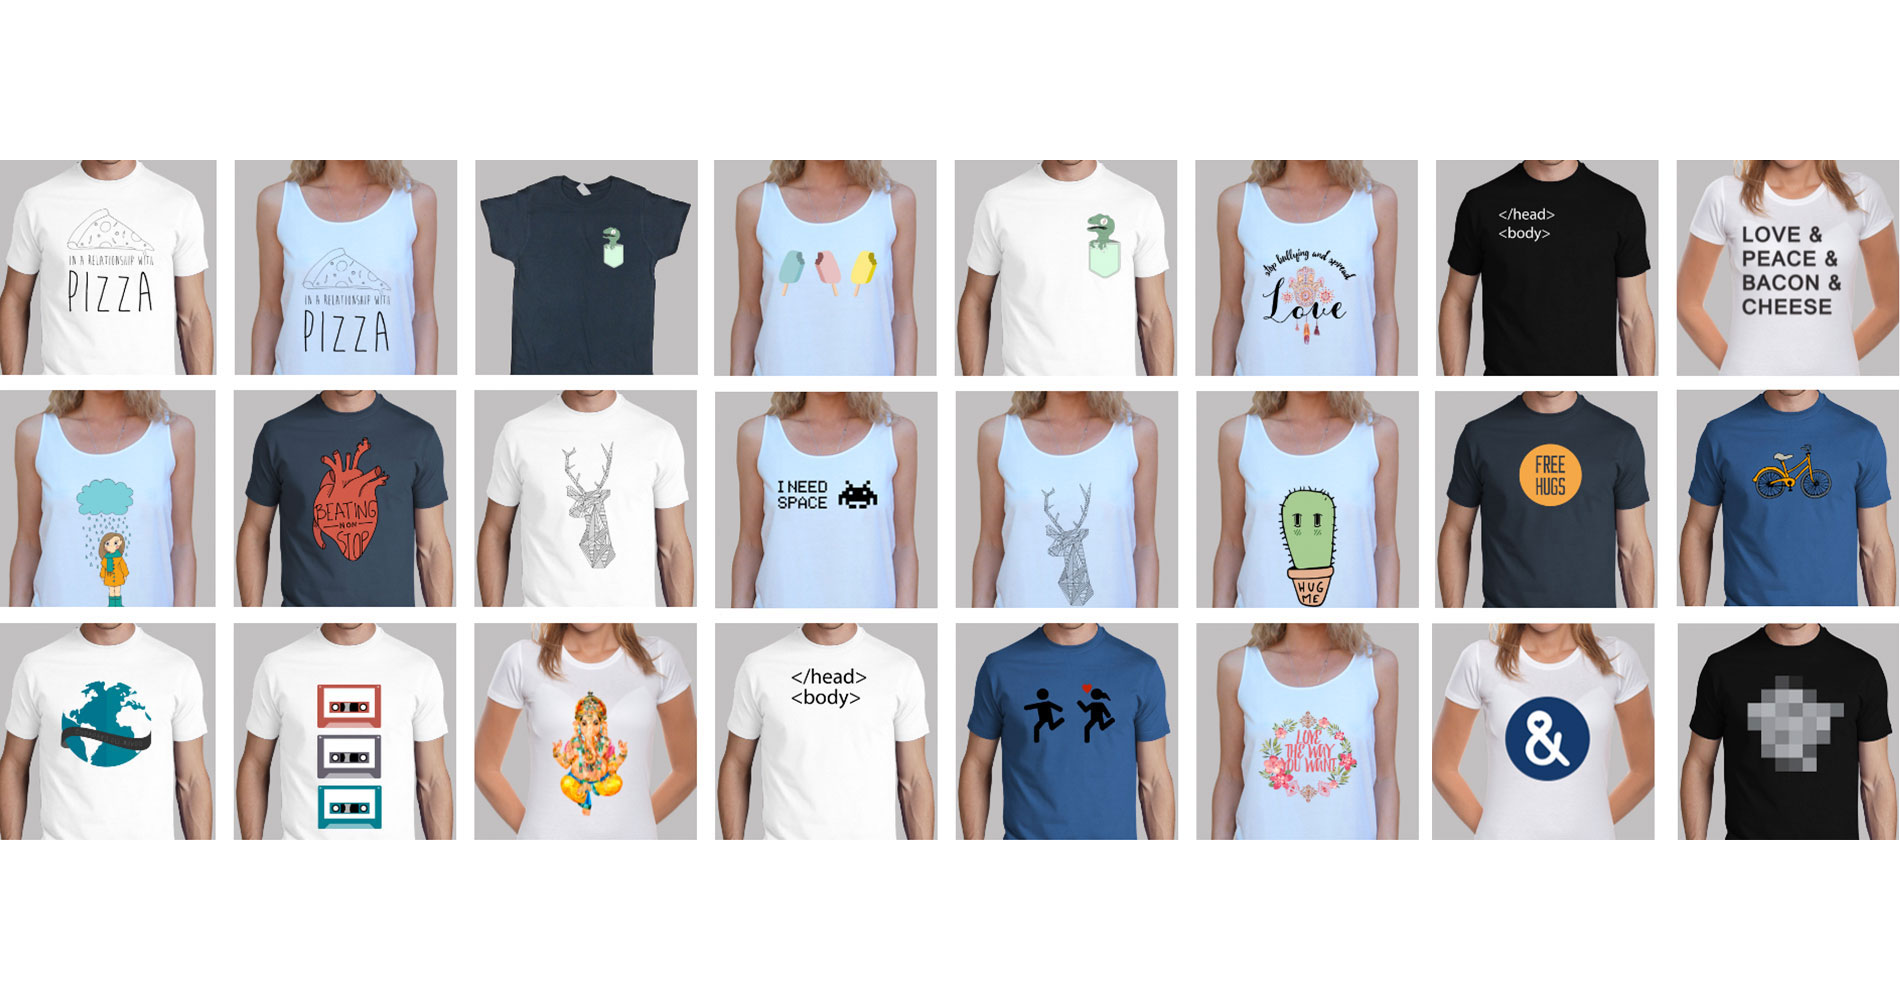 comprar camisetas con diseños creativos o comprar camisetas personalizadas